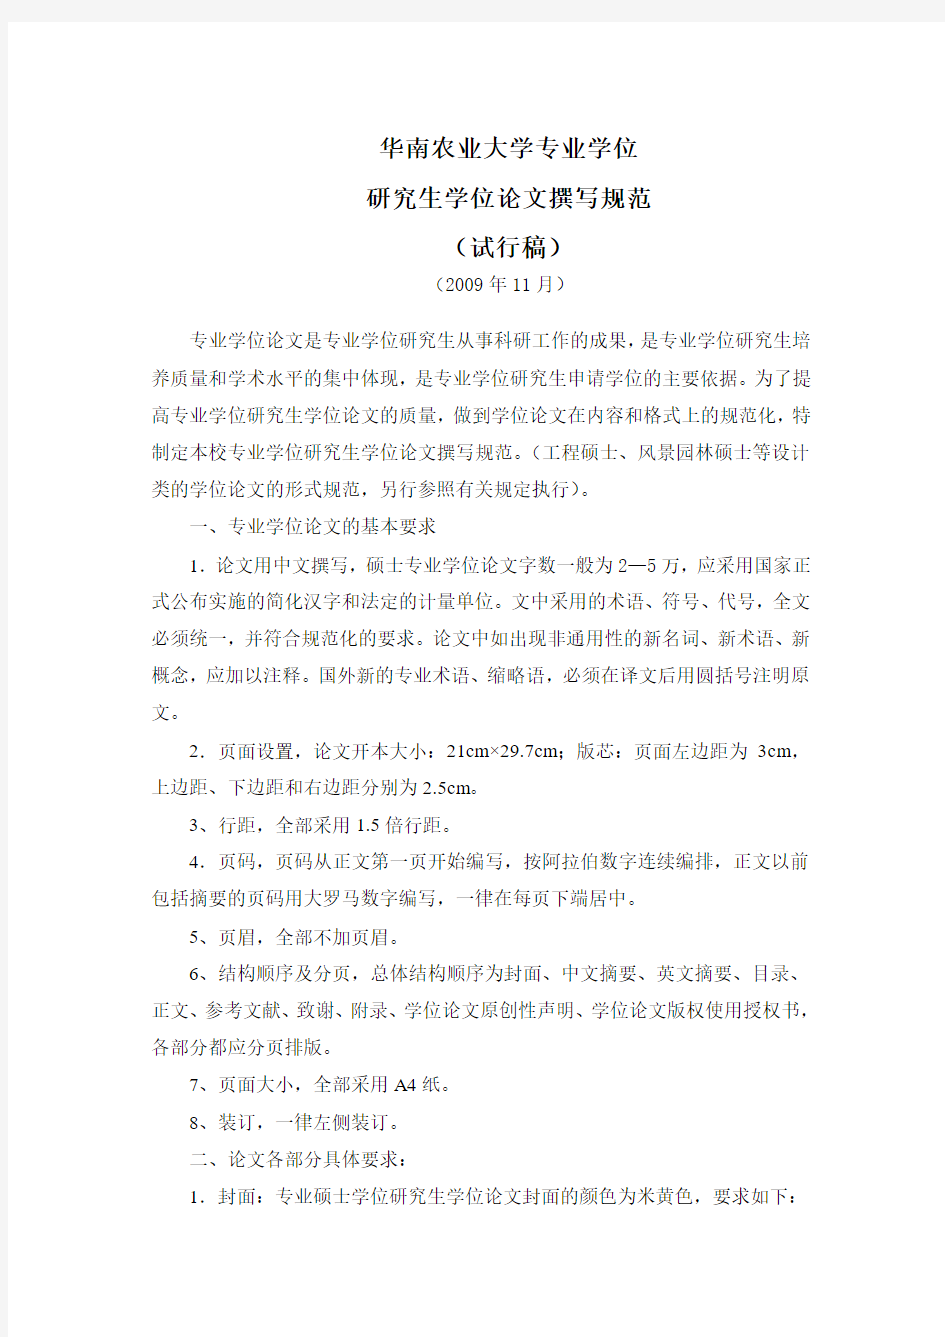 华南农业大学专业学位研究生学位论文撰写规范(试行稿)(2009年11月)